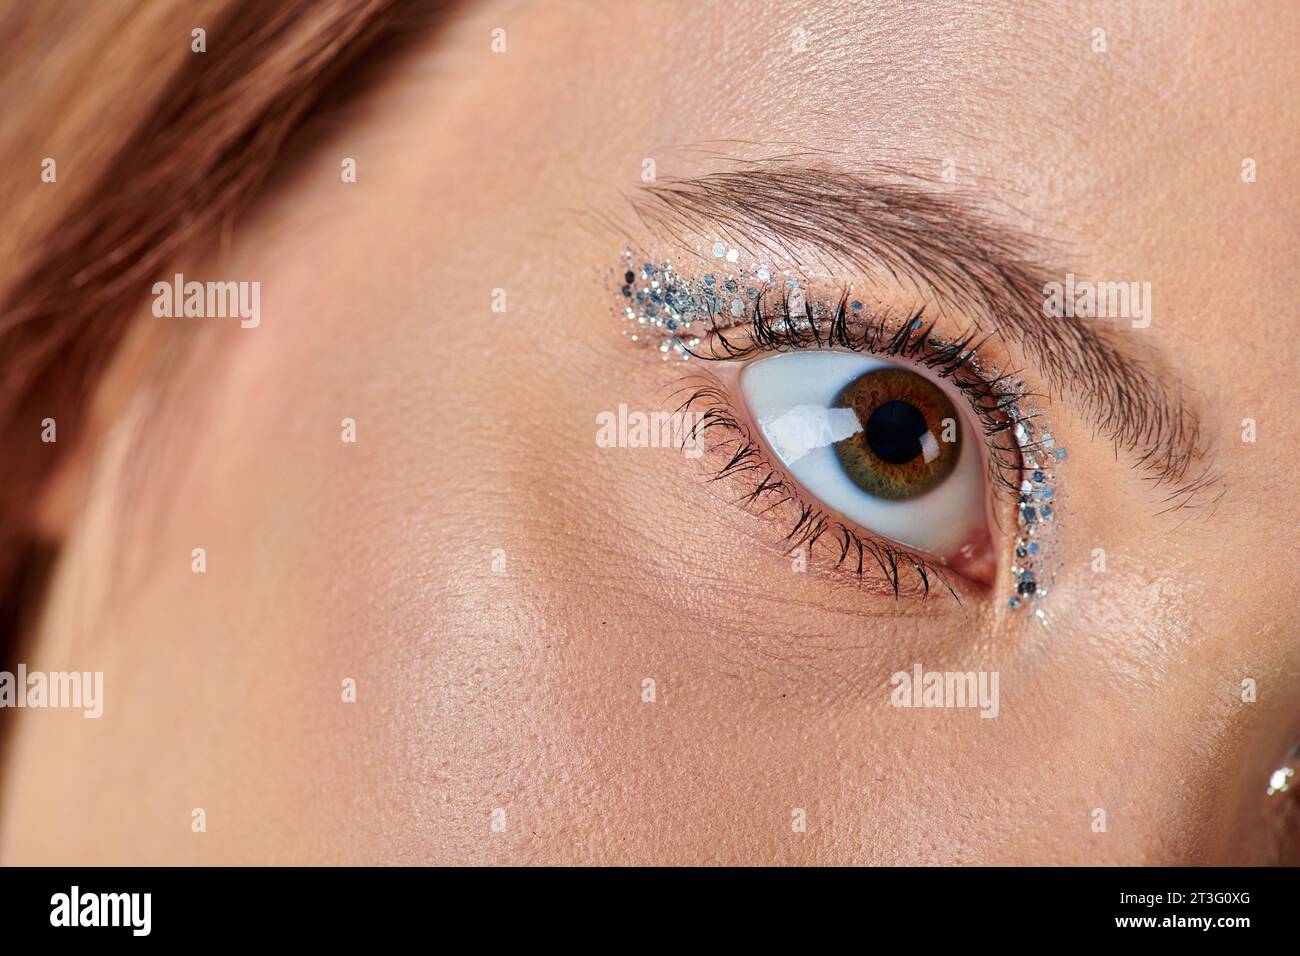 Nahaufnahme einer jungen Frau mit Feiertagsschminke, weibliches Auge mit schimmerndem Lidschatten, der wegblickt Stockfoto